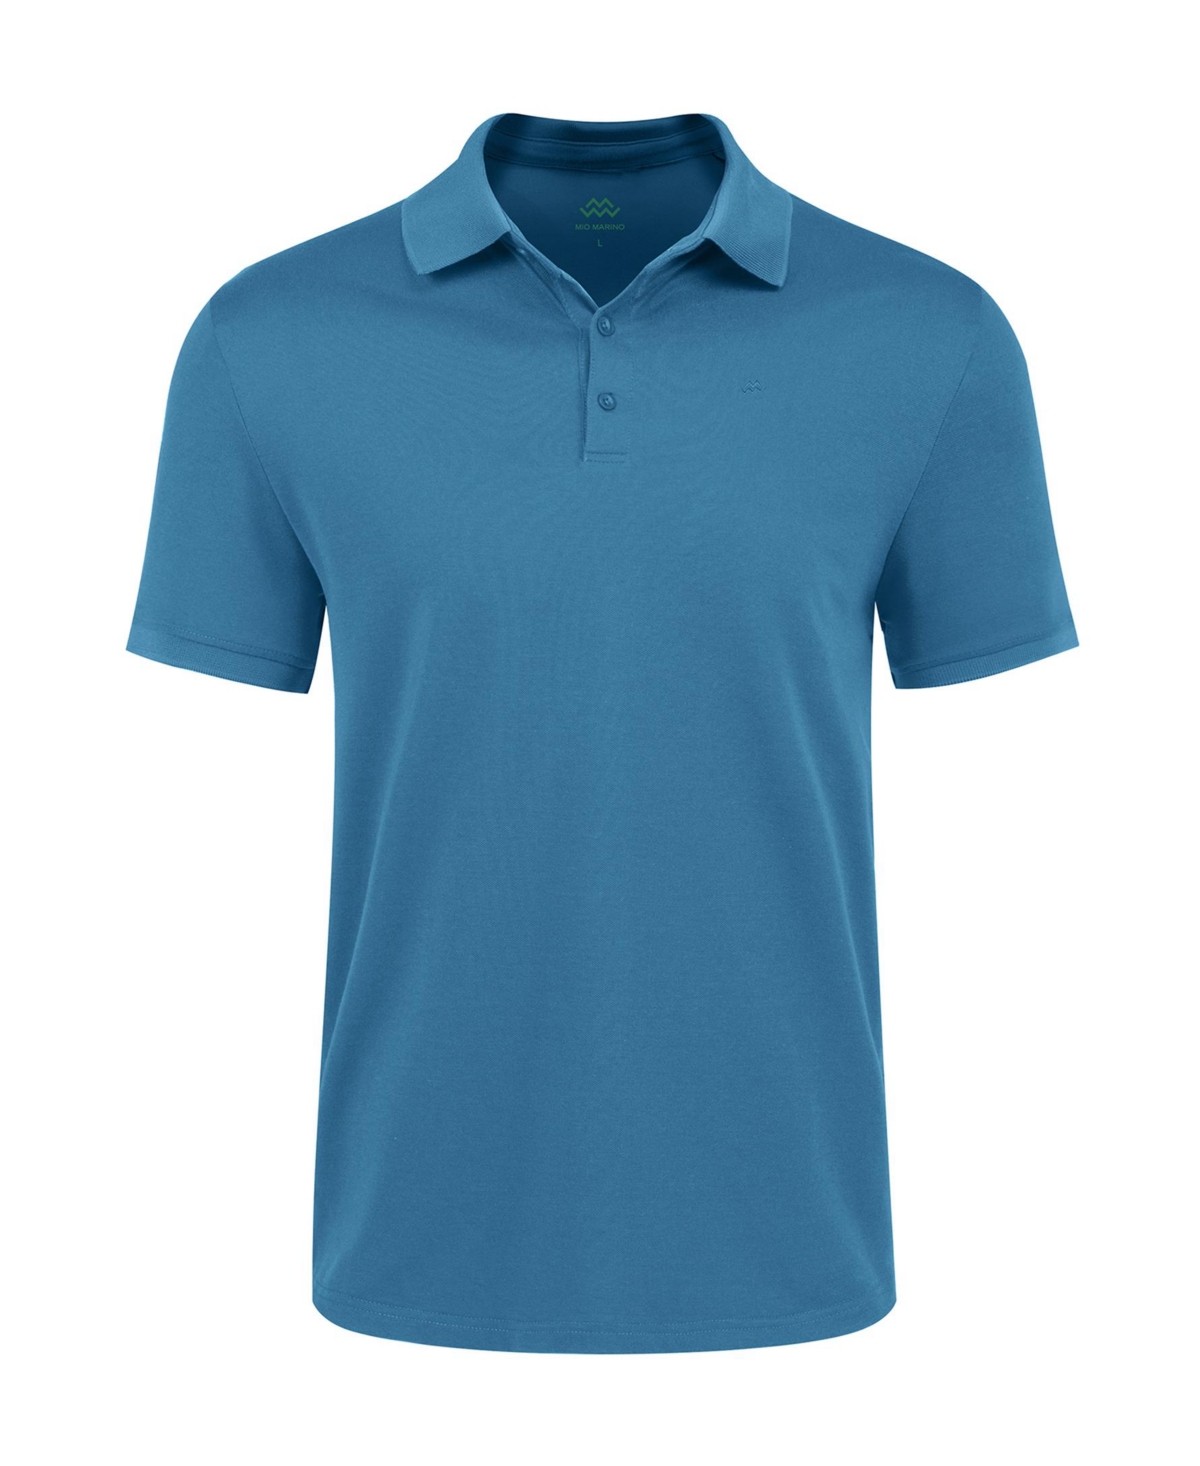 Men's Classic-Fit Cotton-Blend Pique Polo Shirt - Denim blue